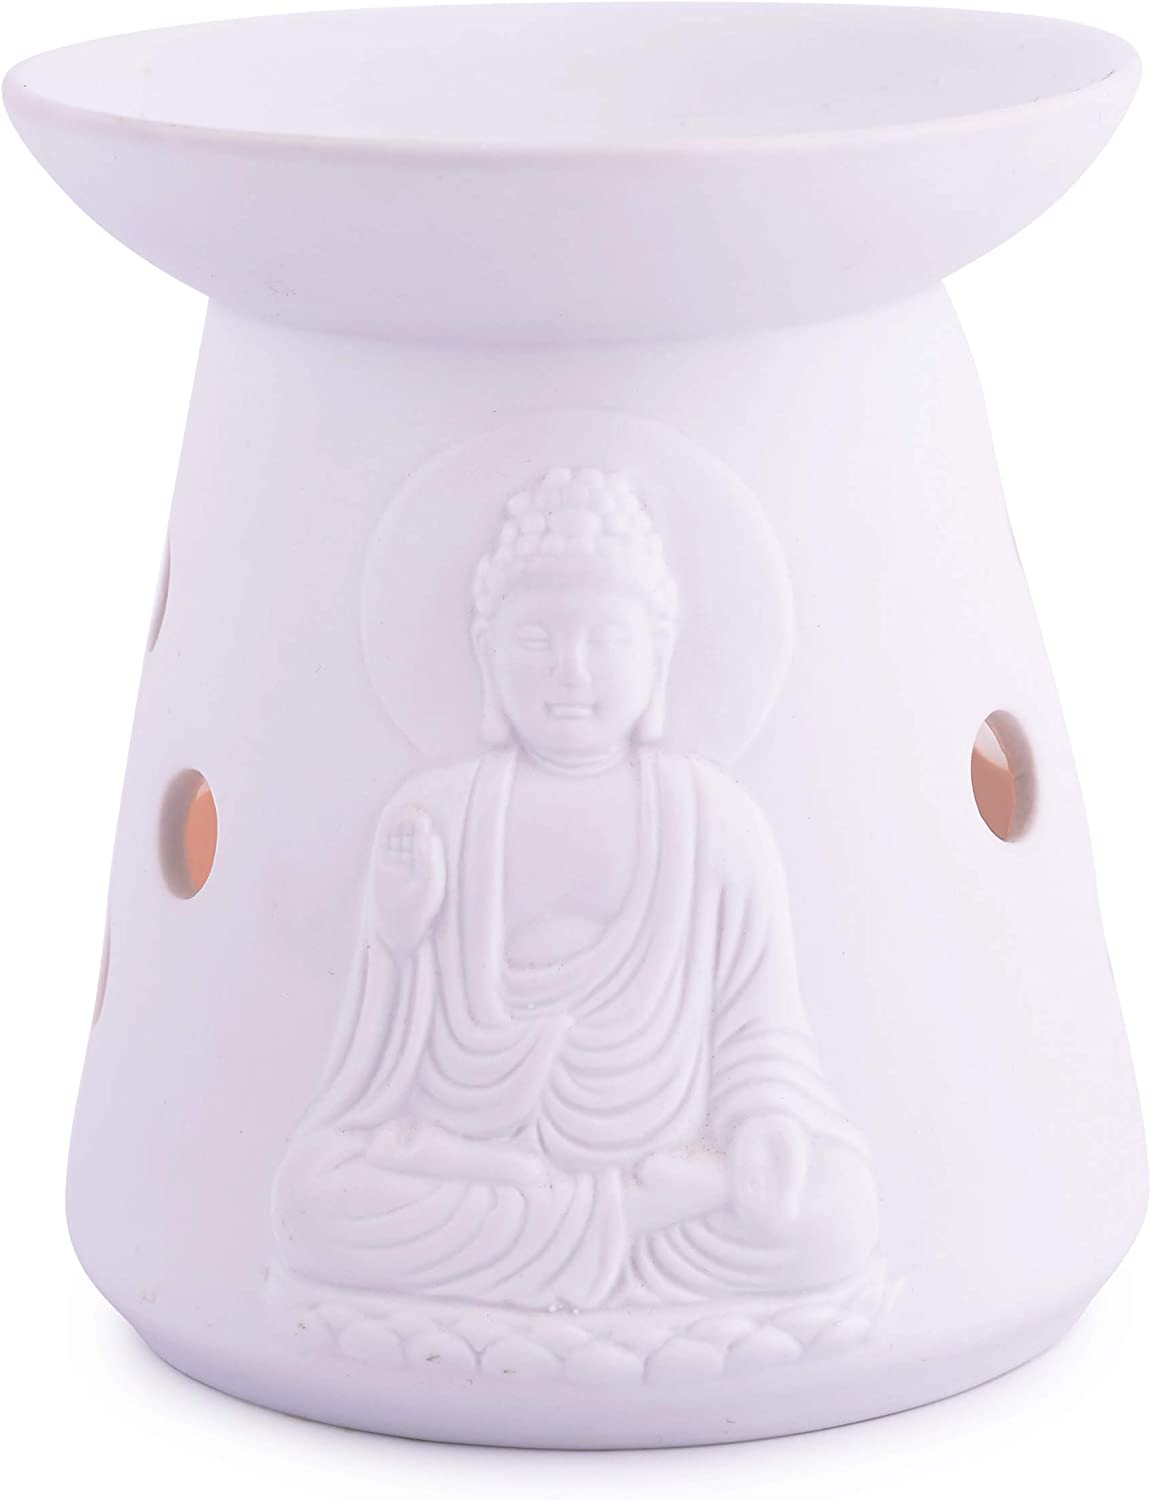 Fragrance lamp "Porcelain Buddha" - Pajoma